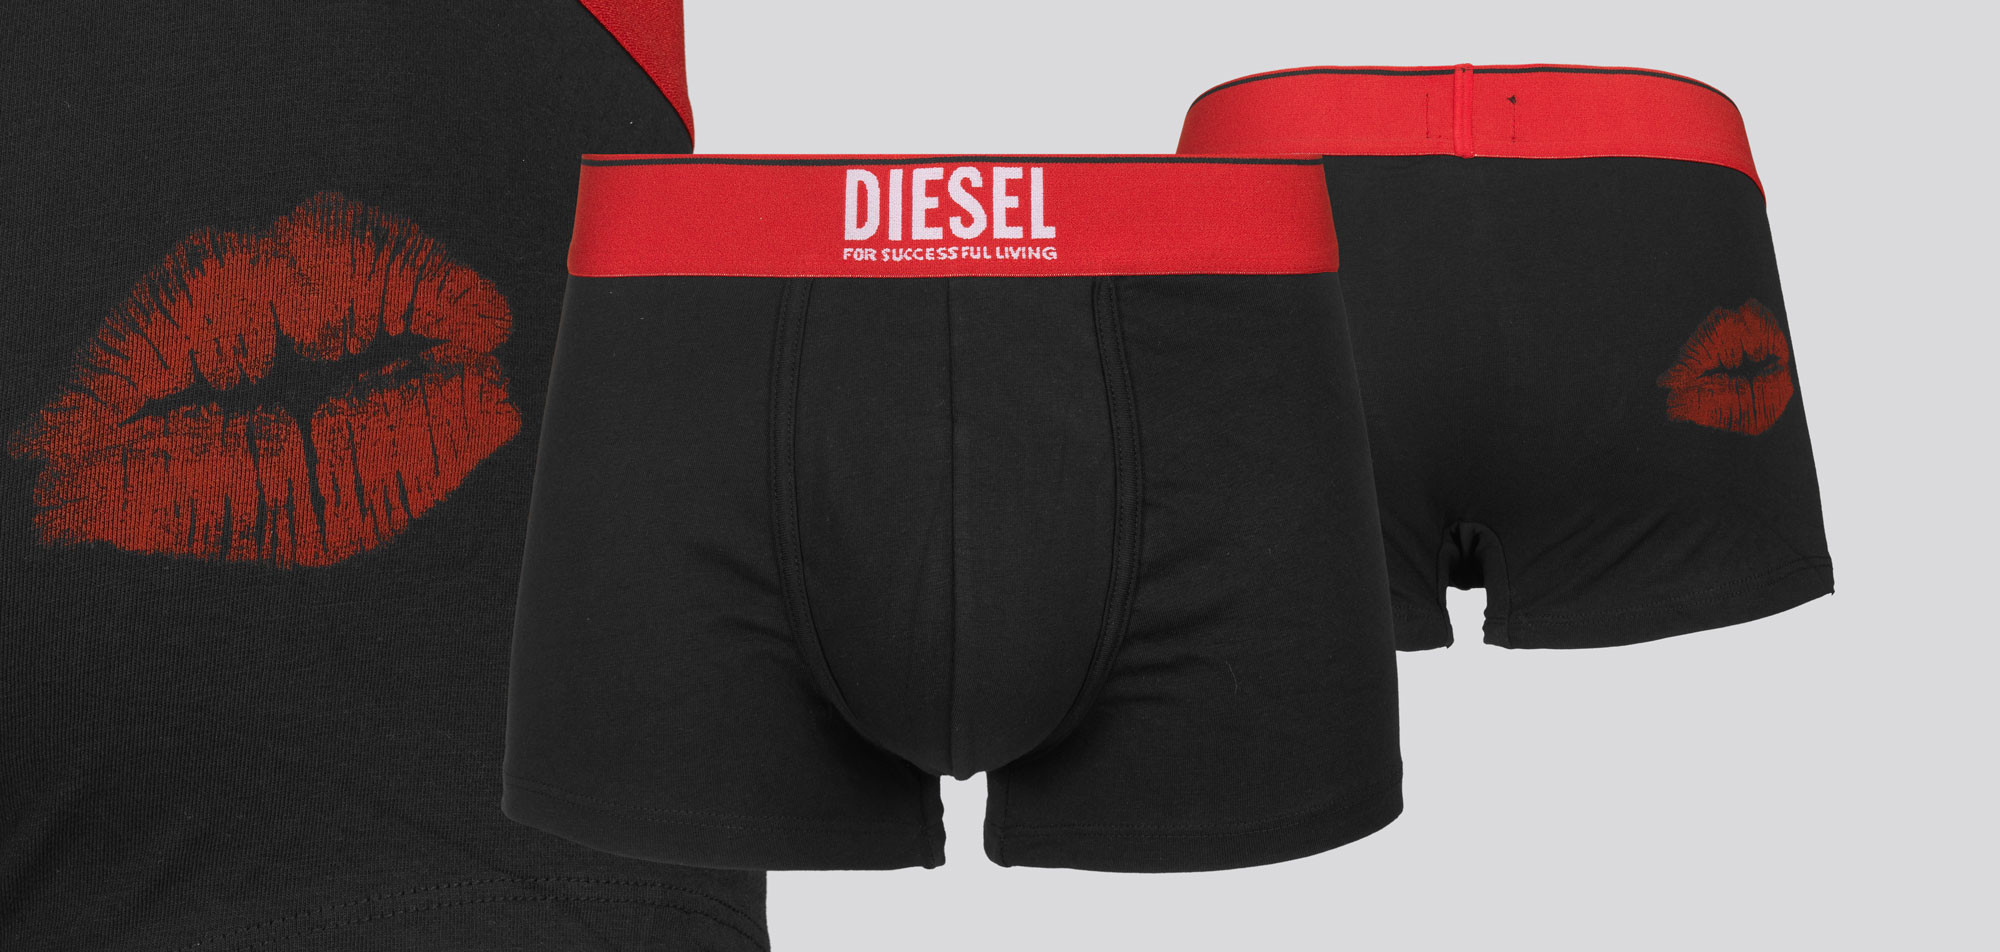 Diesel Boxershort Damien NEAI, color Nee